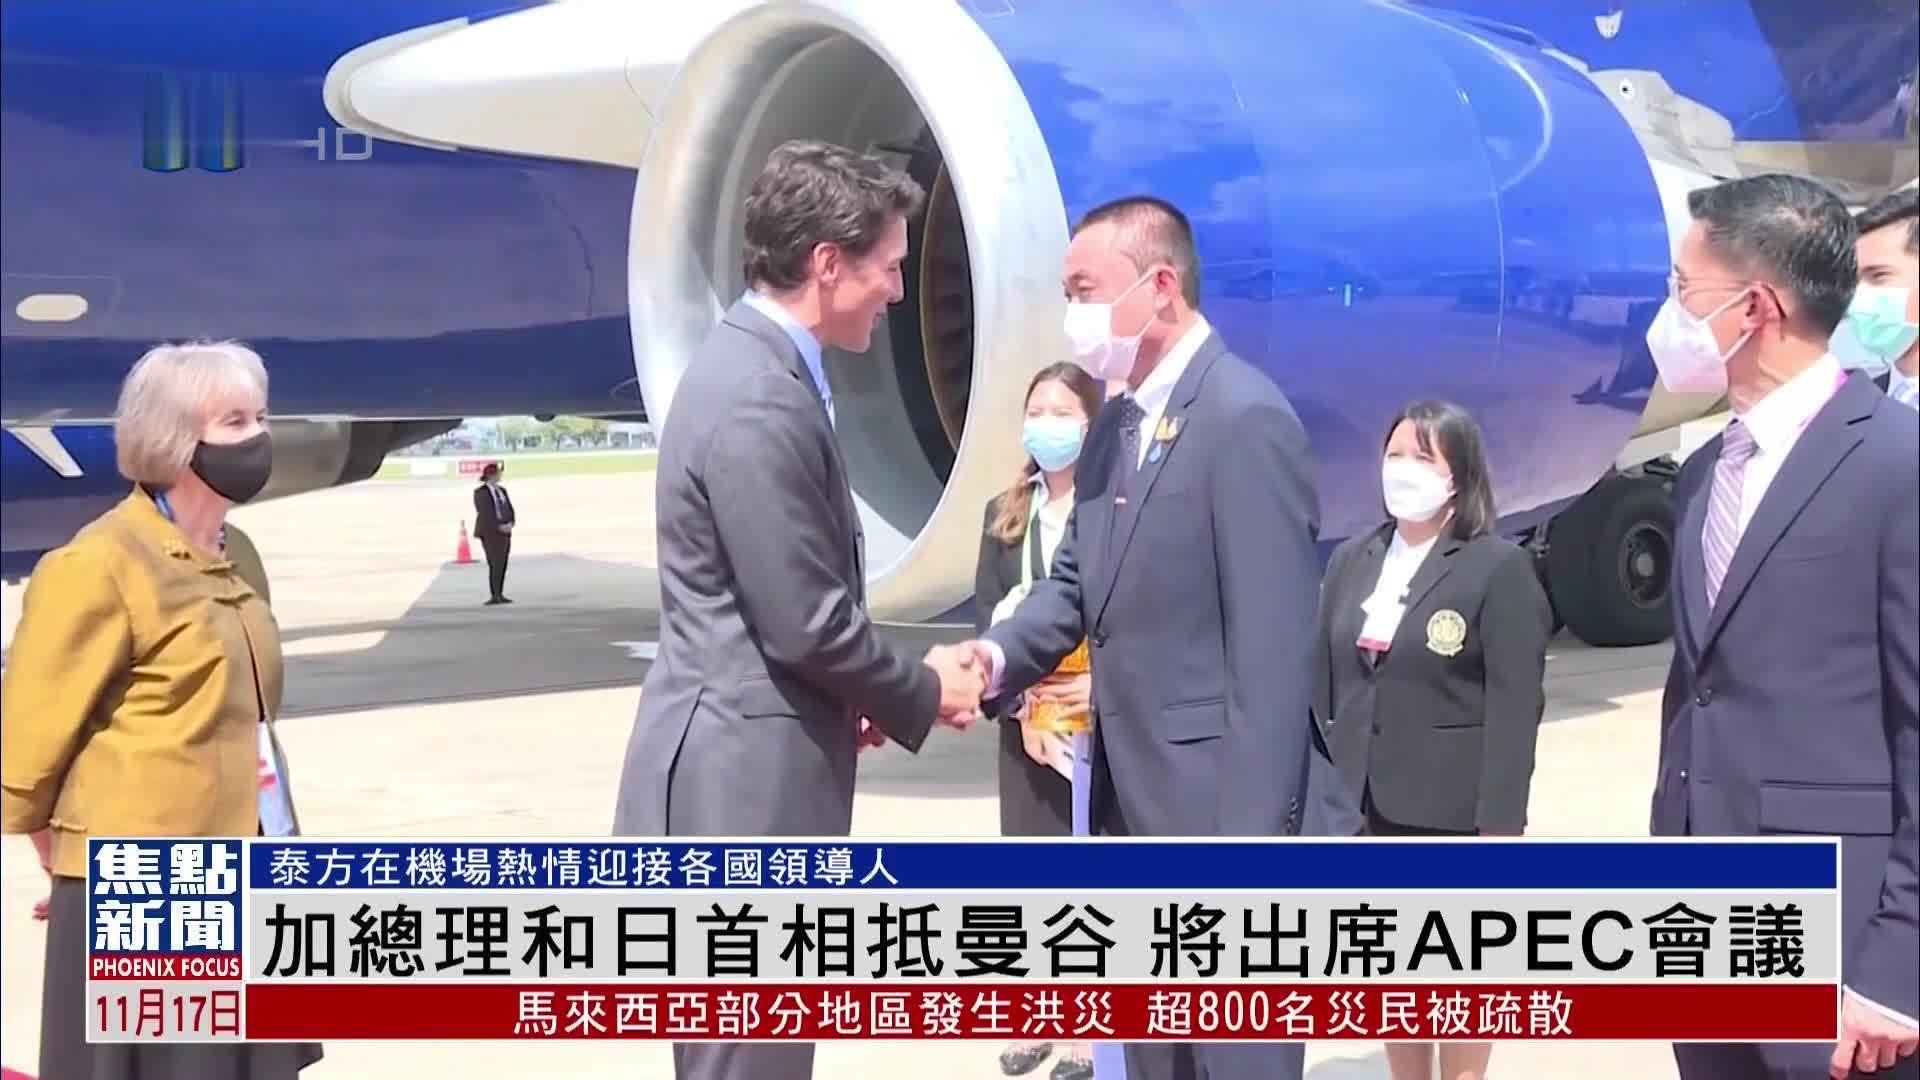 加拿大总理和日本首相抵达曼谷 将出席APEC会议